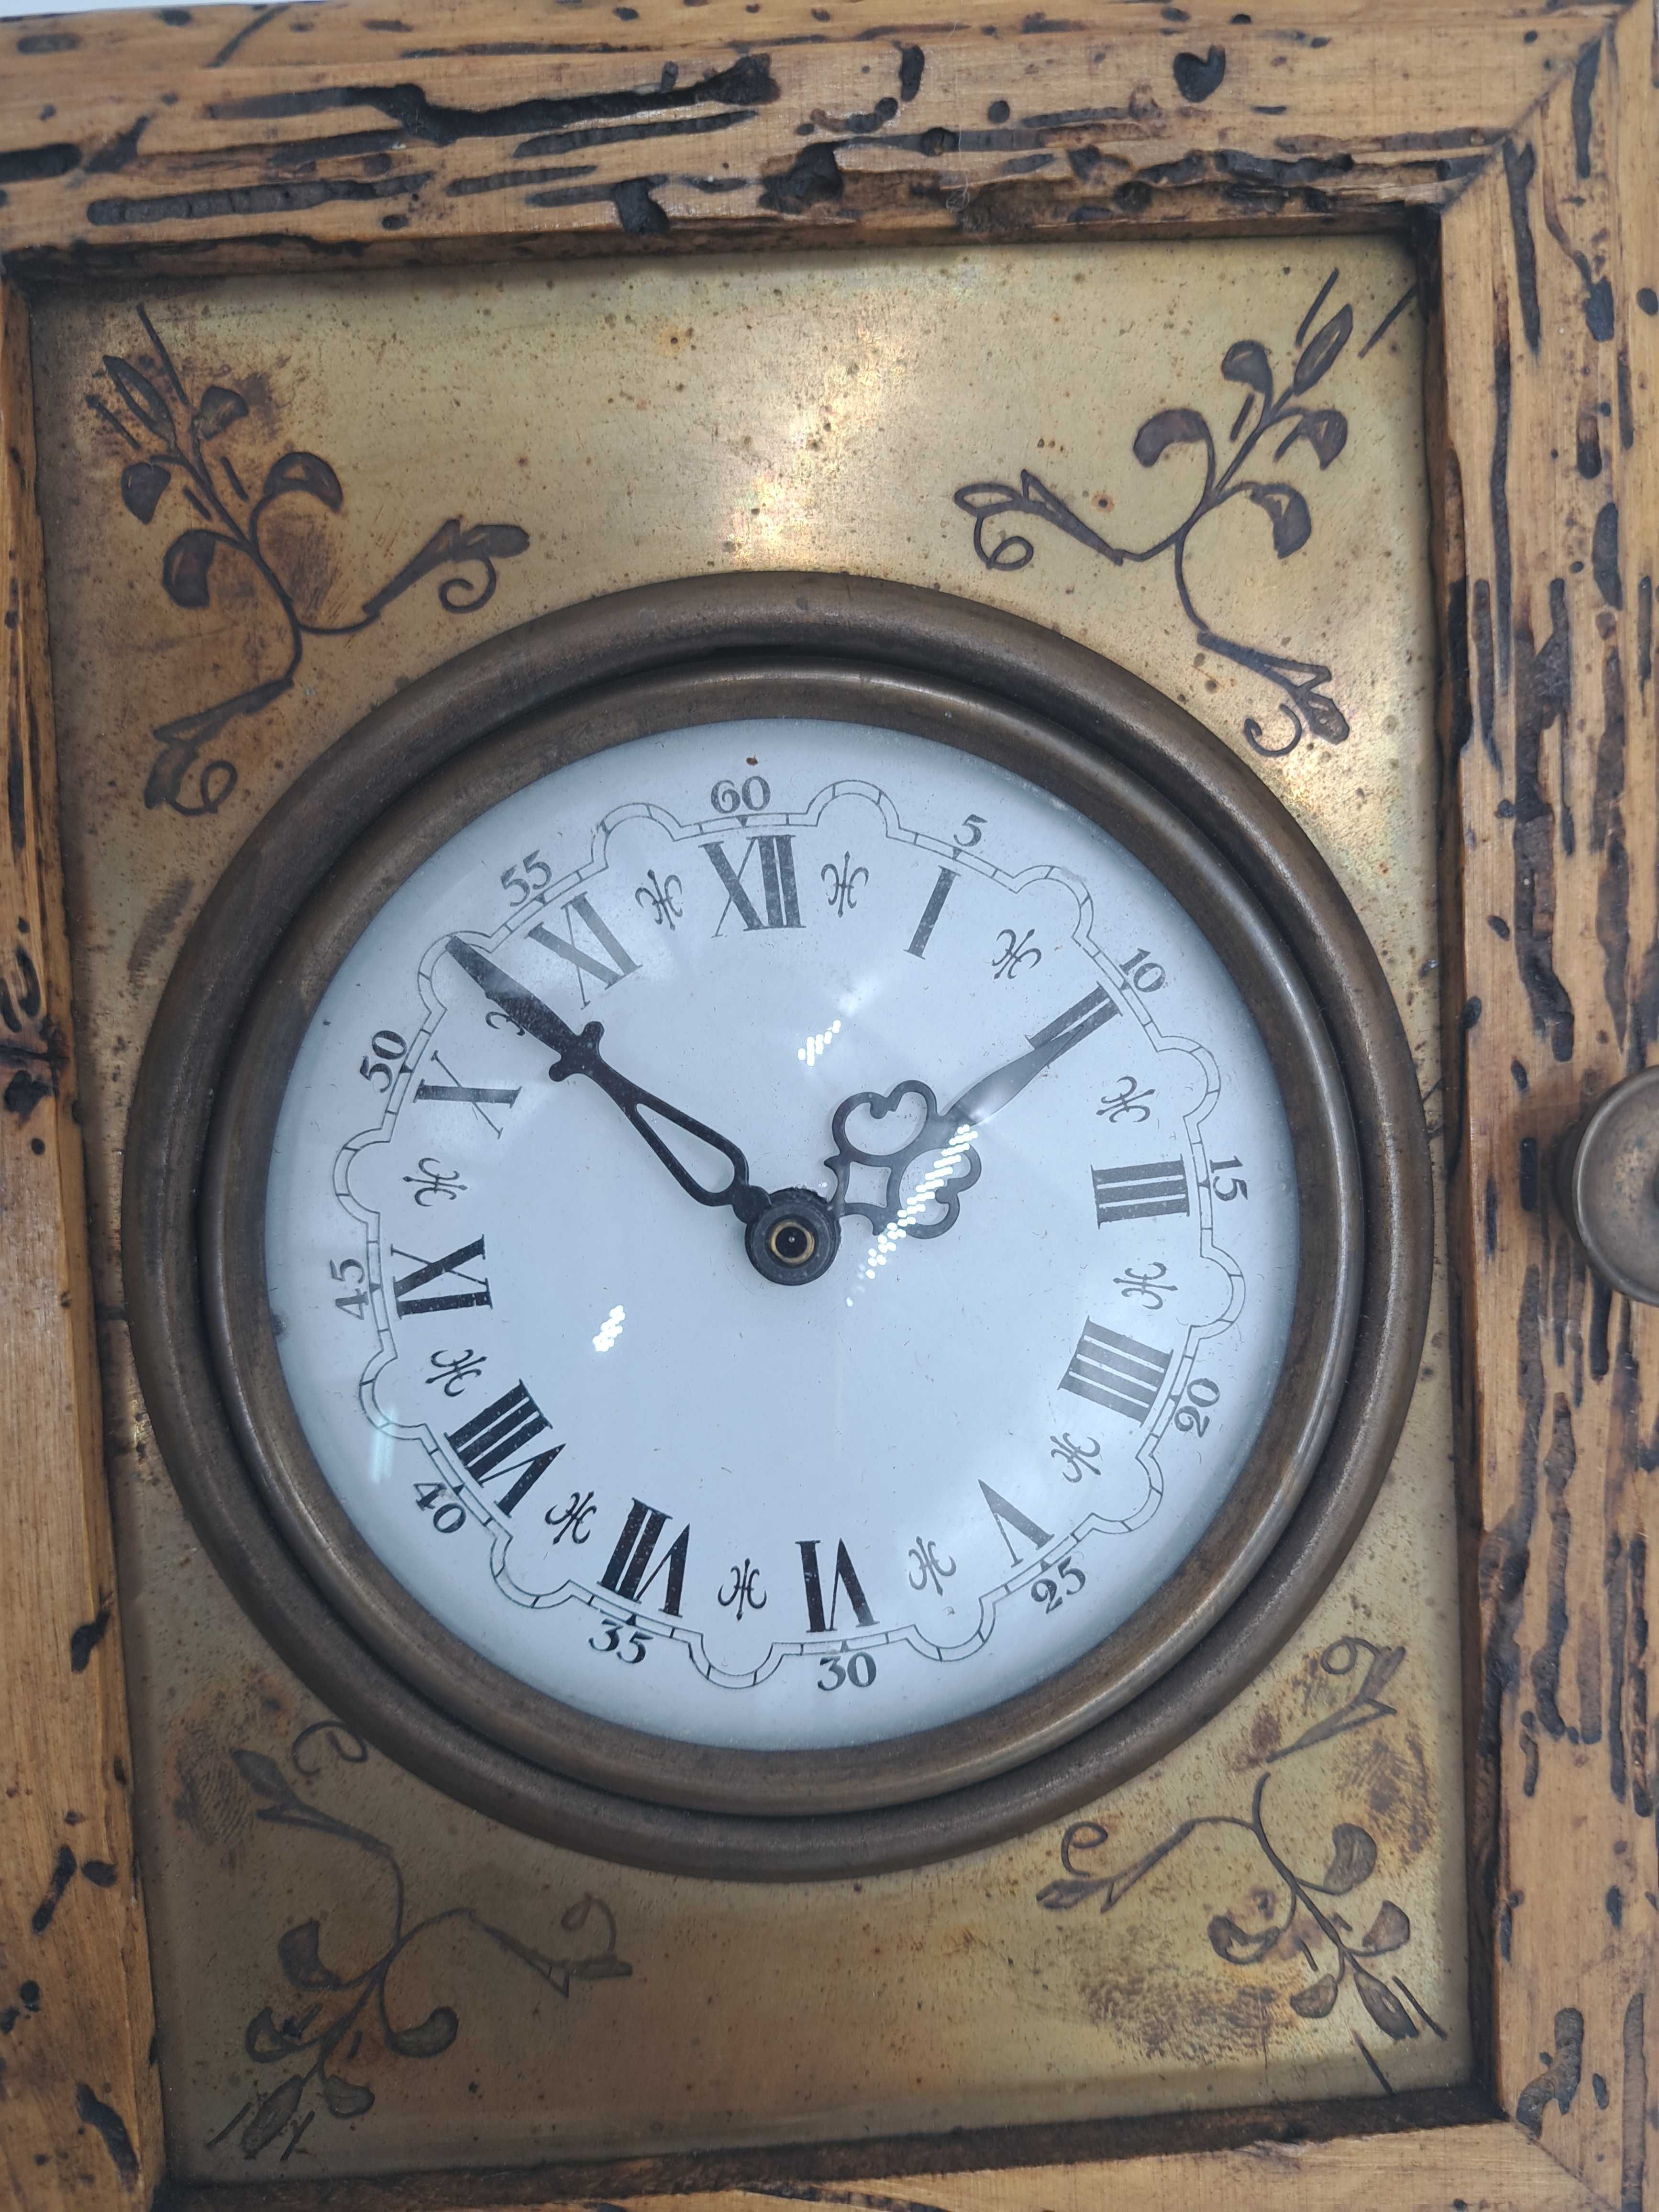 Zegar ścienny drewniany skrzynka kwarcowy stylizowany